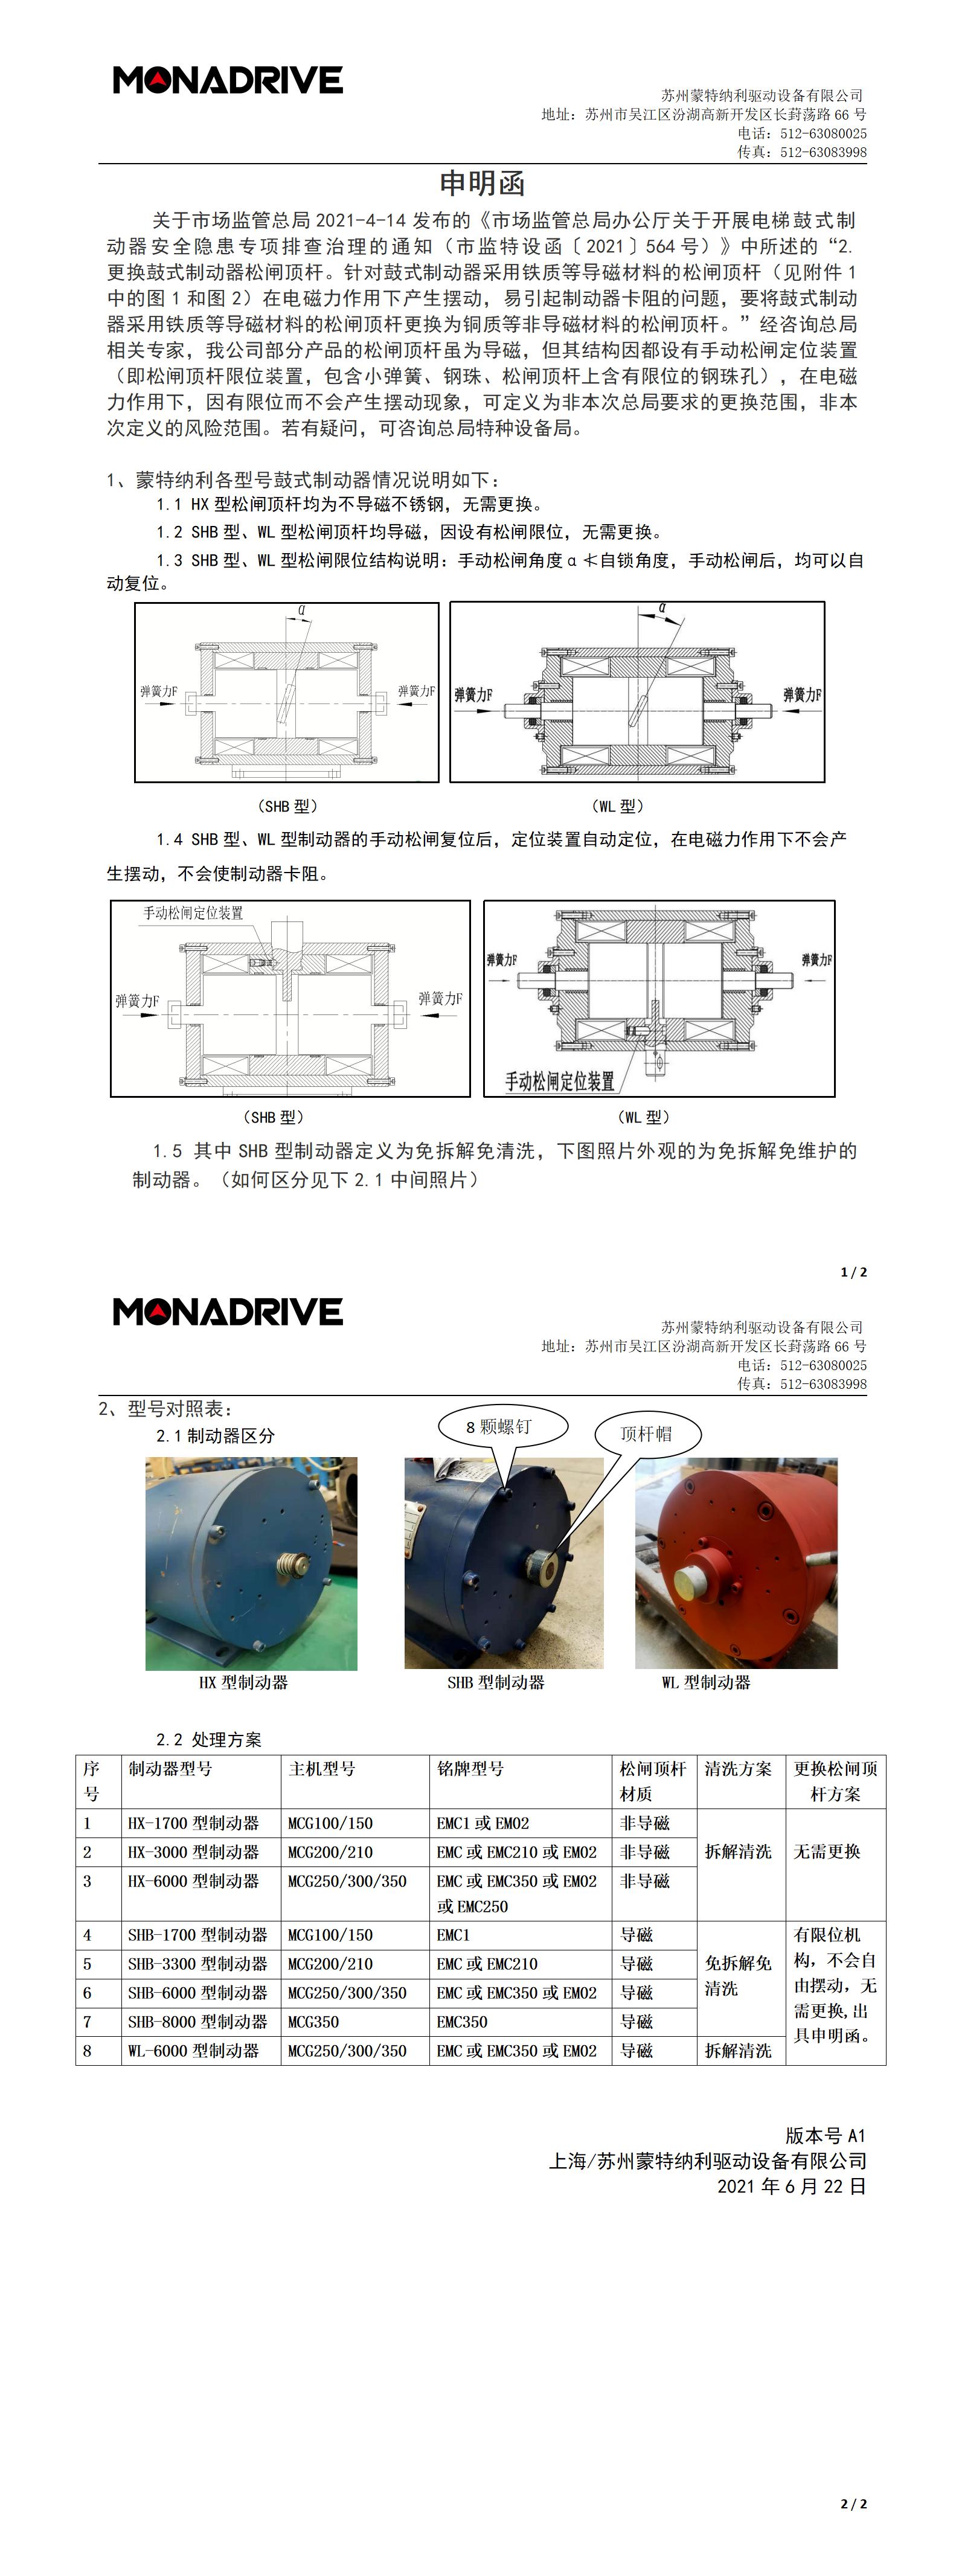 上海苏州蒙纳鼓式制动器--松闸杆无需更换申明